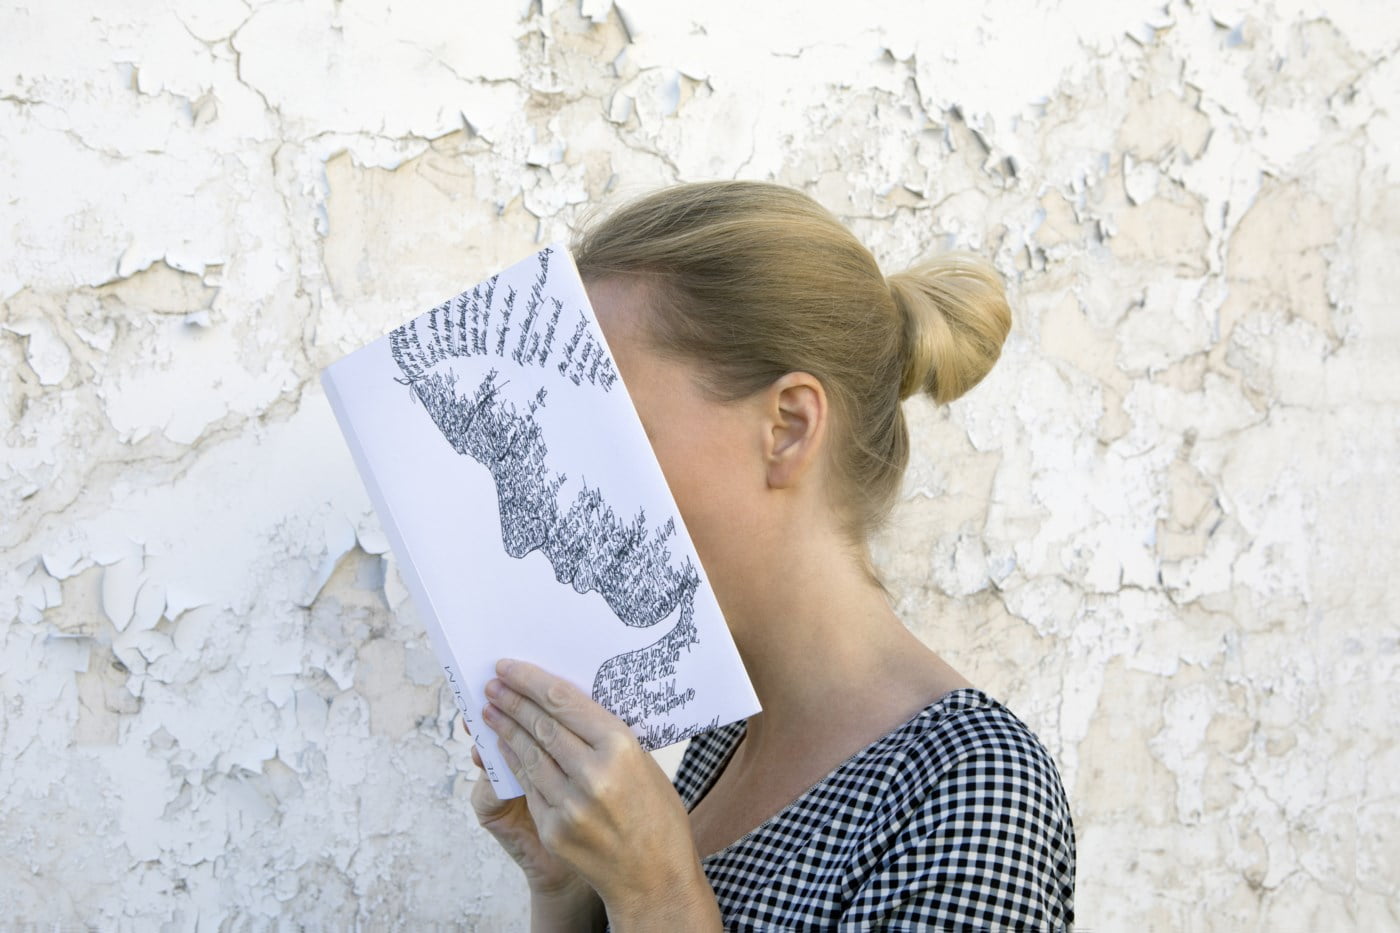 Kvinne holder en åpen bok foran ansiktet sitt, skjuler delvis sin identitet, mot en flassende vegg.